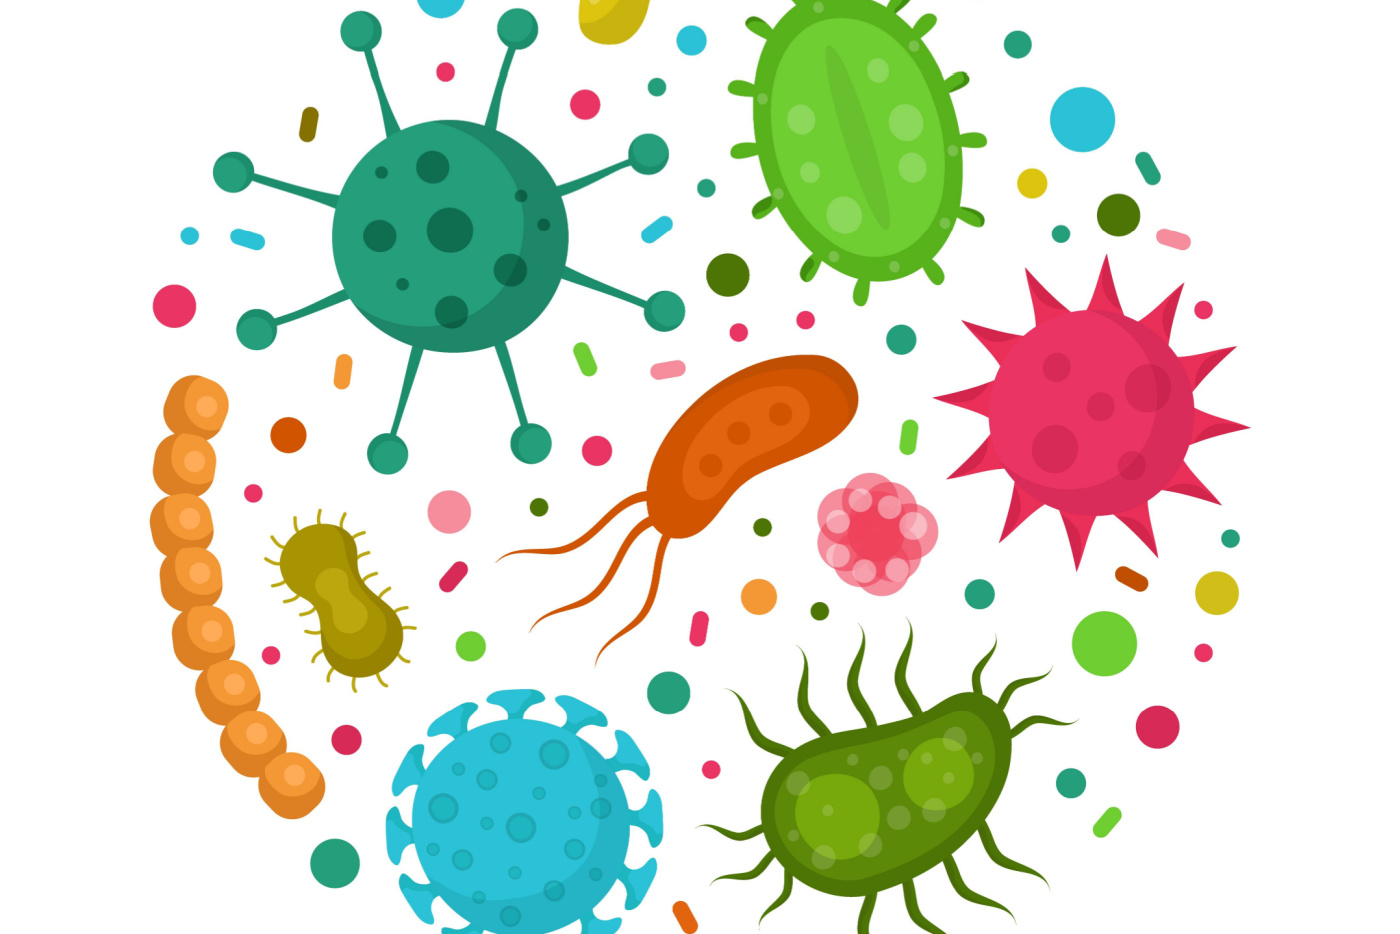 Illustrasjon: Shutterstock, av bakterielle mikroorganismer i en sirkel med ulike farger. Forskjellige bakterier, virus, sopp